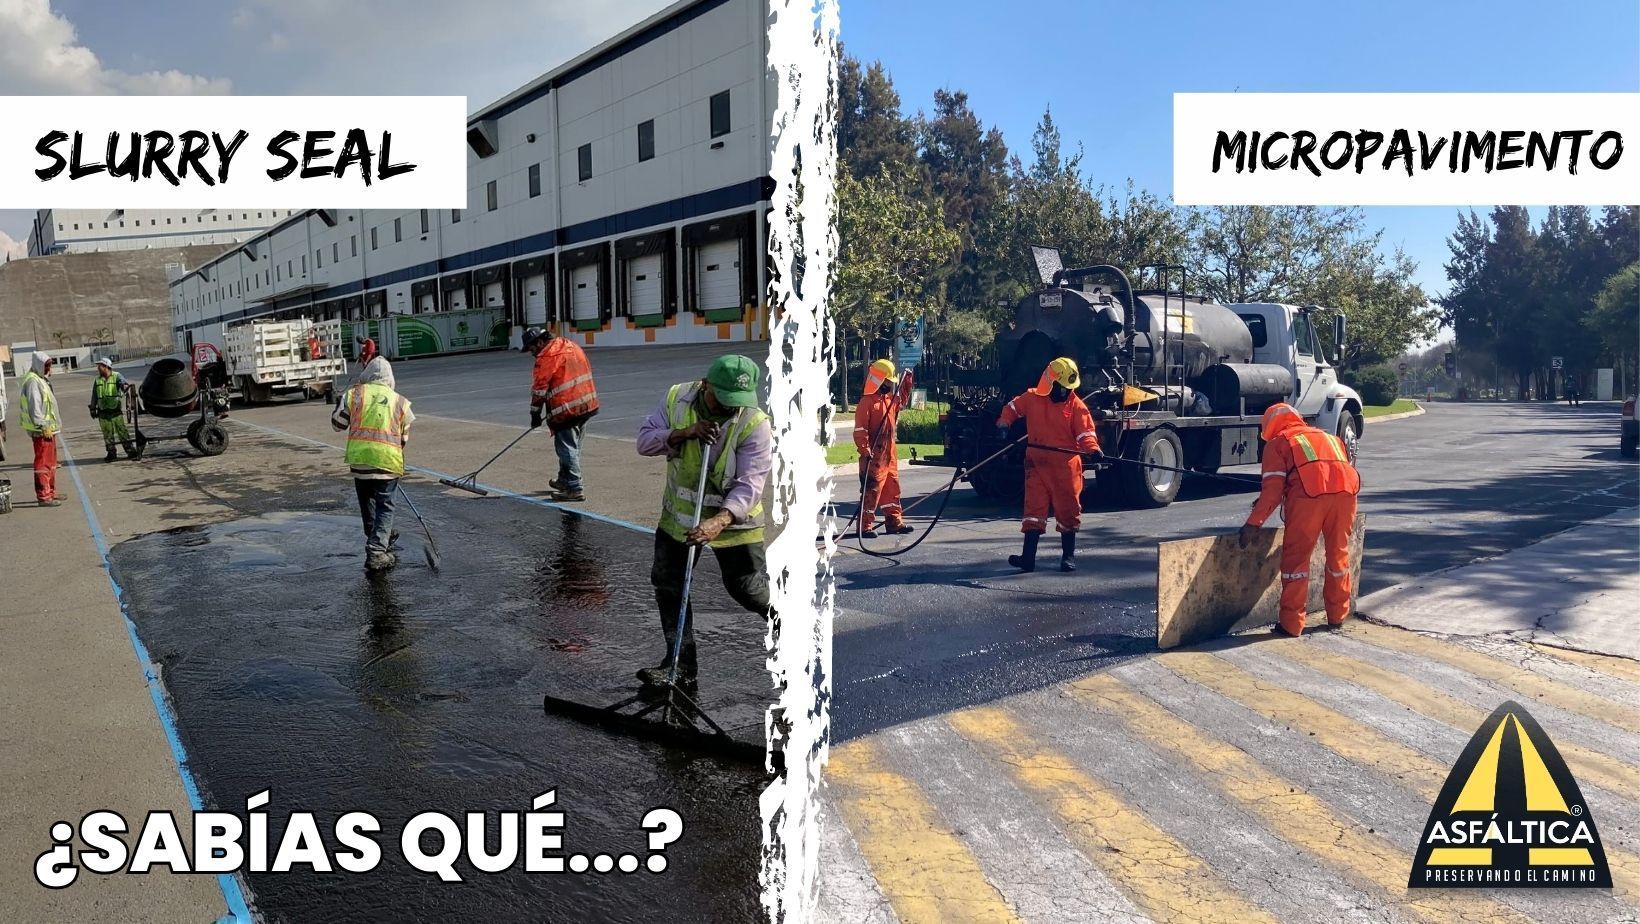 Micropavimento: La evolución del Slurry Seal en tratamientos superficiales para asfaltos